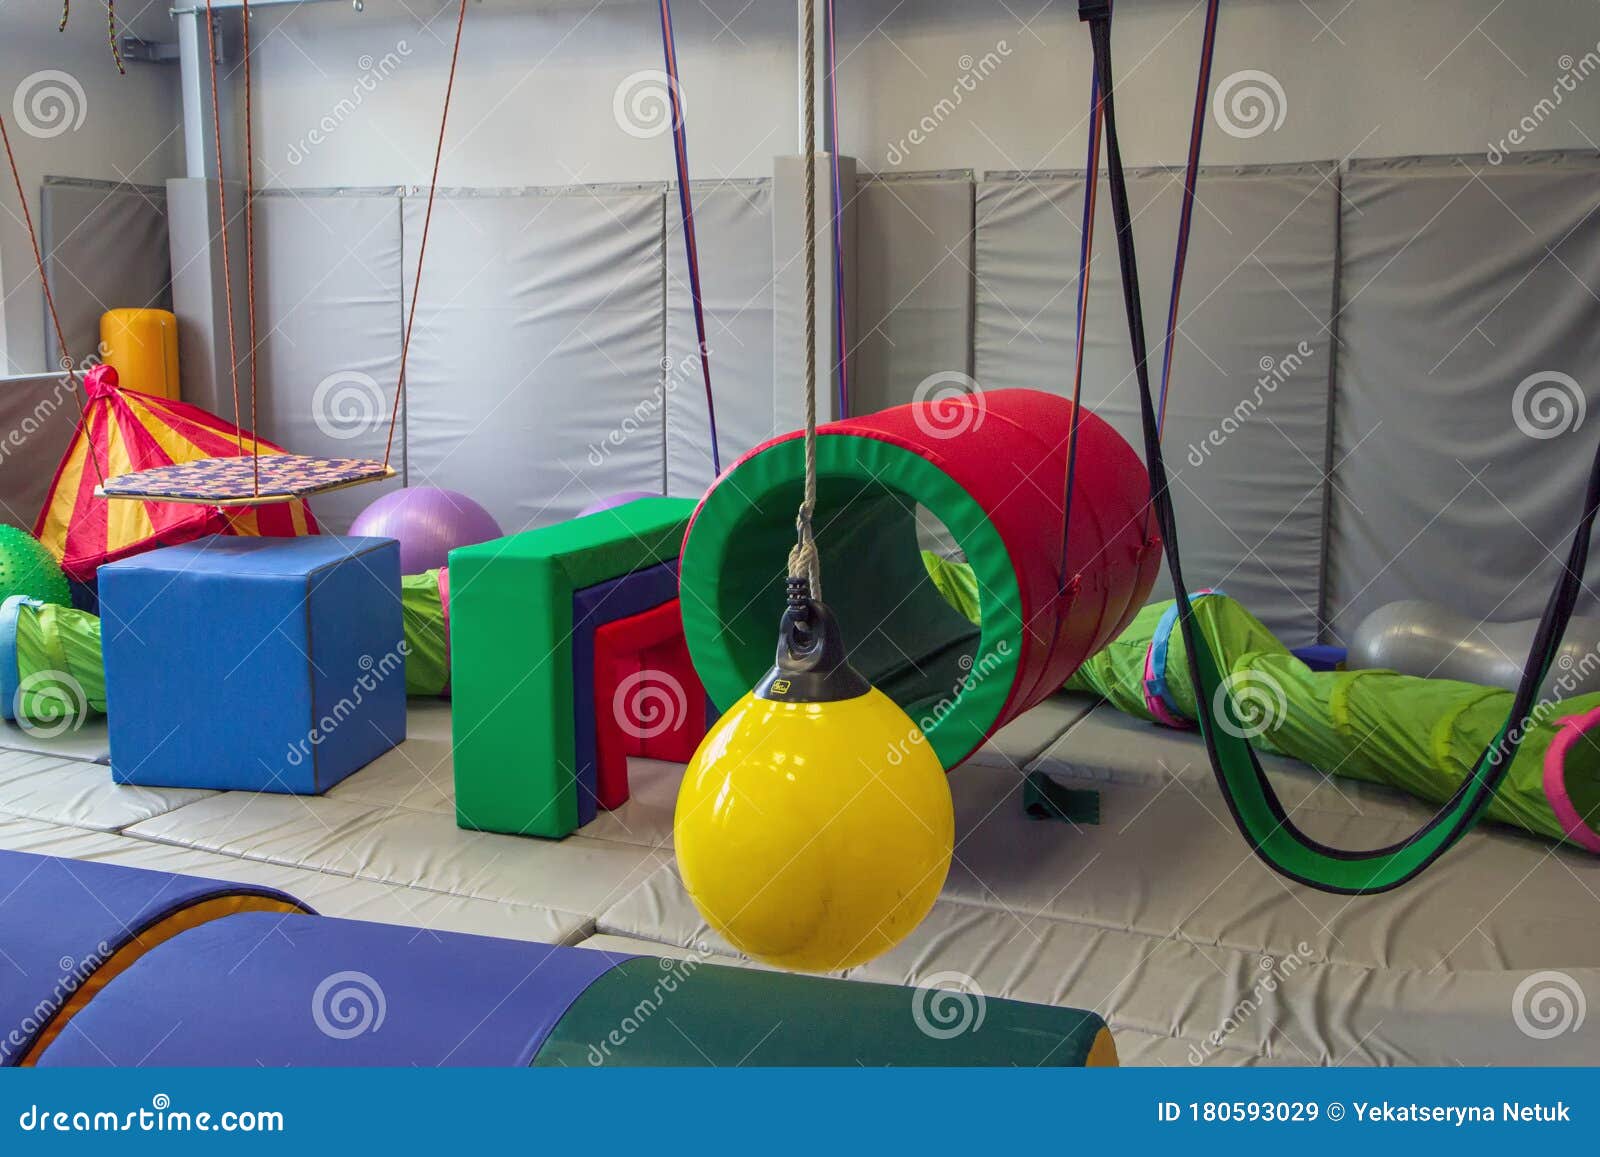 sensory integration room in the center for children